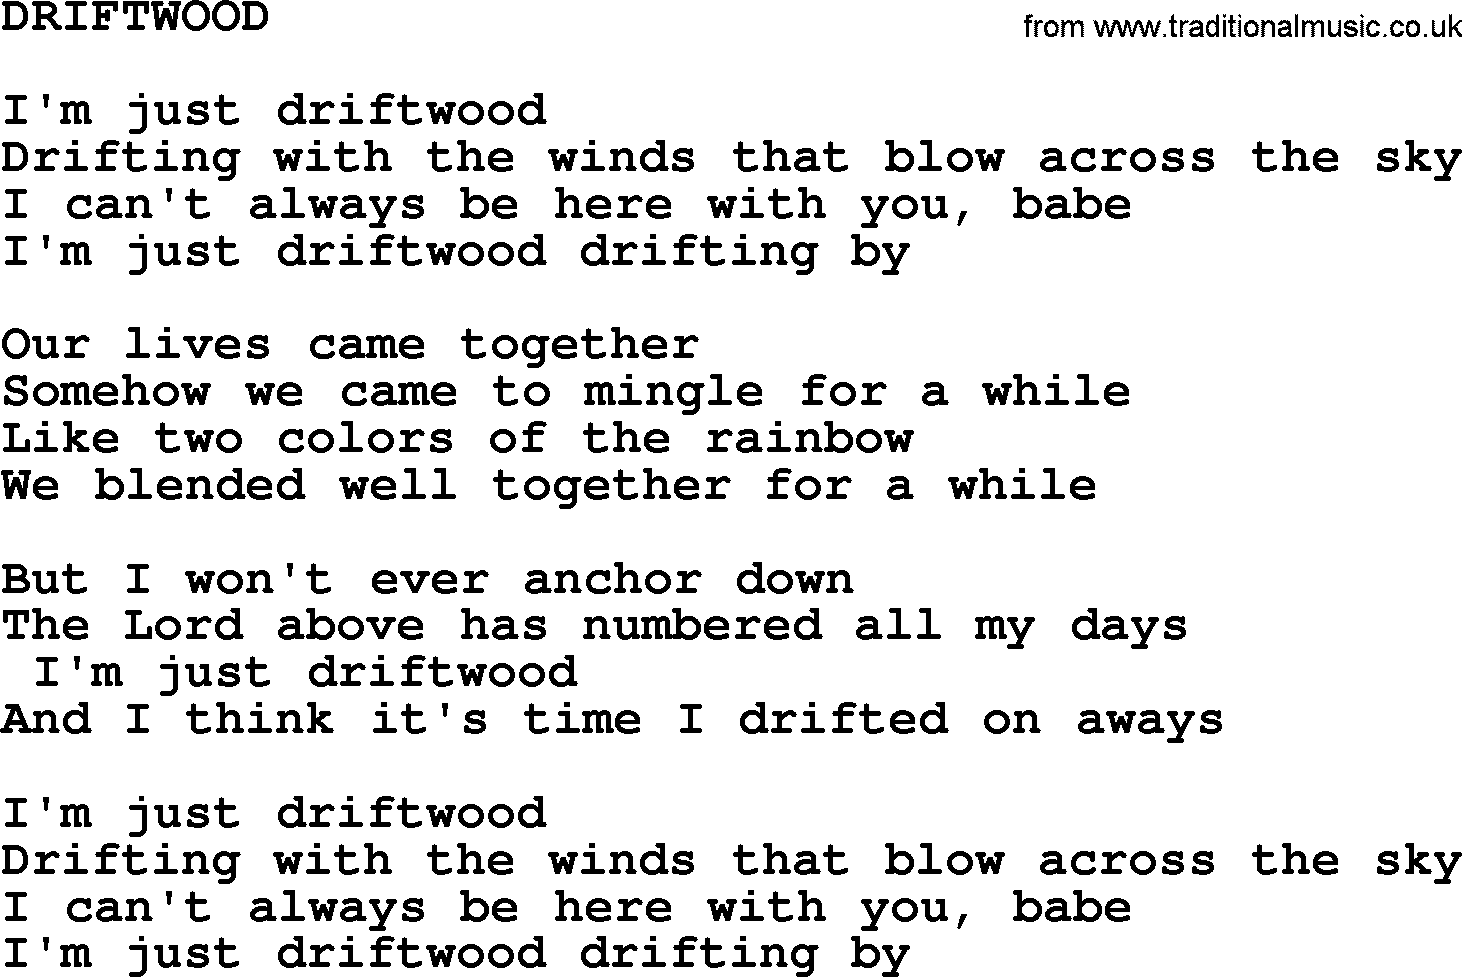 Merle Haggard song: Driftwood, lyrics.